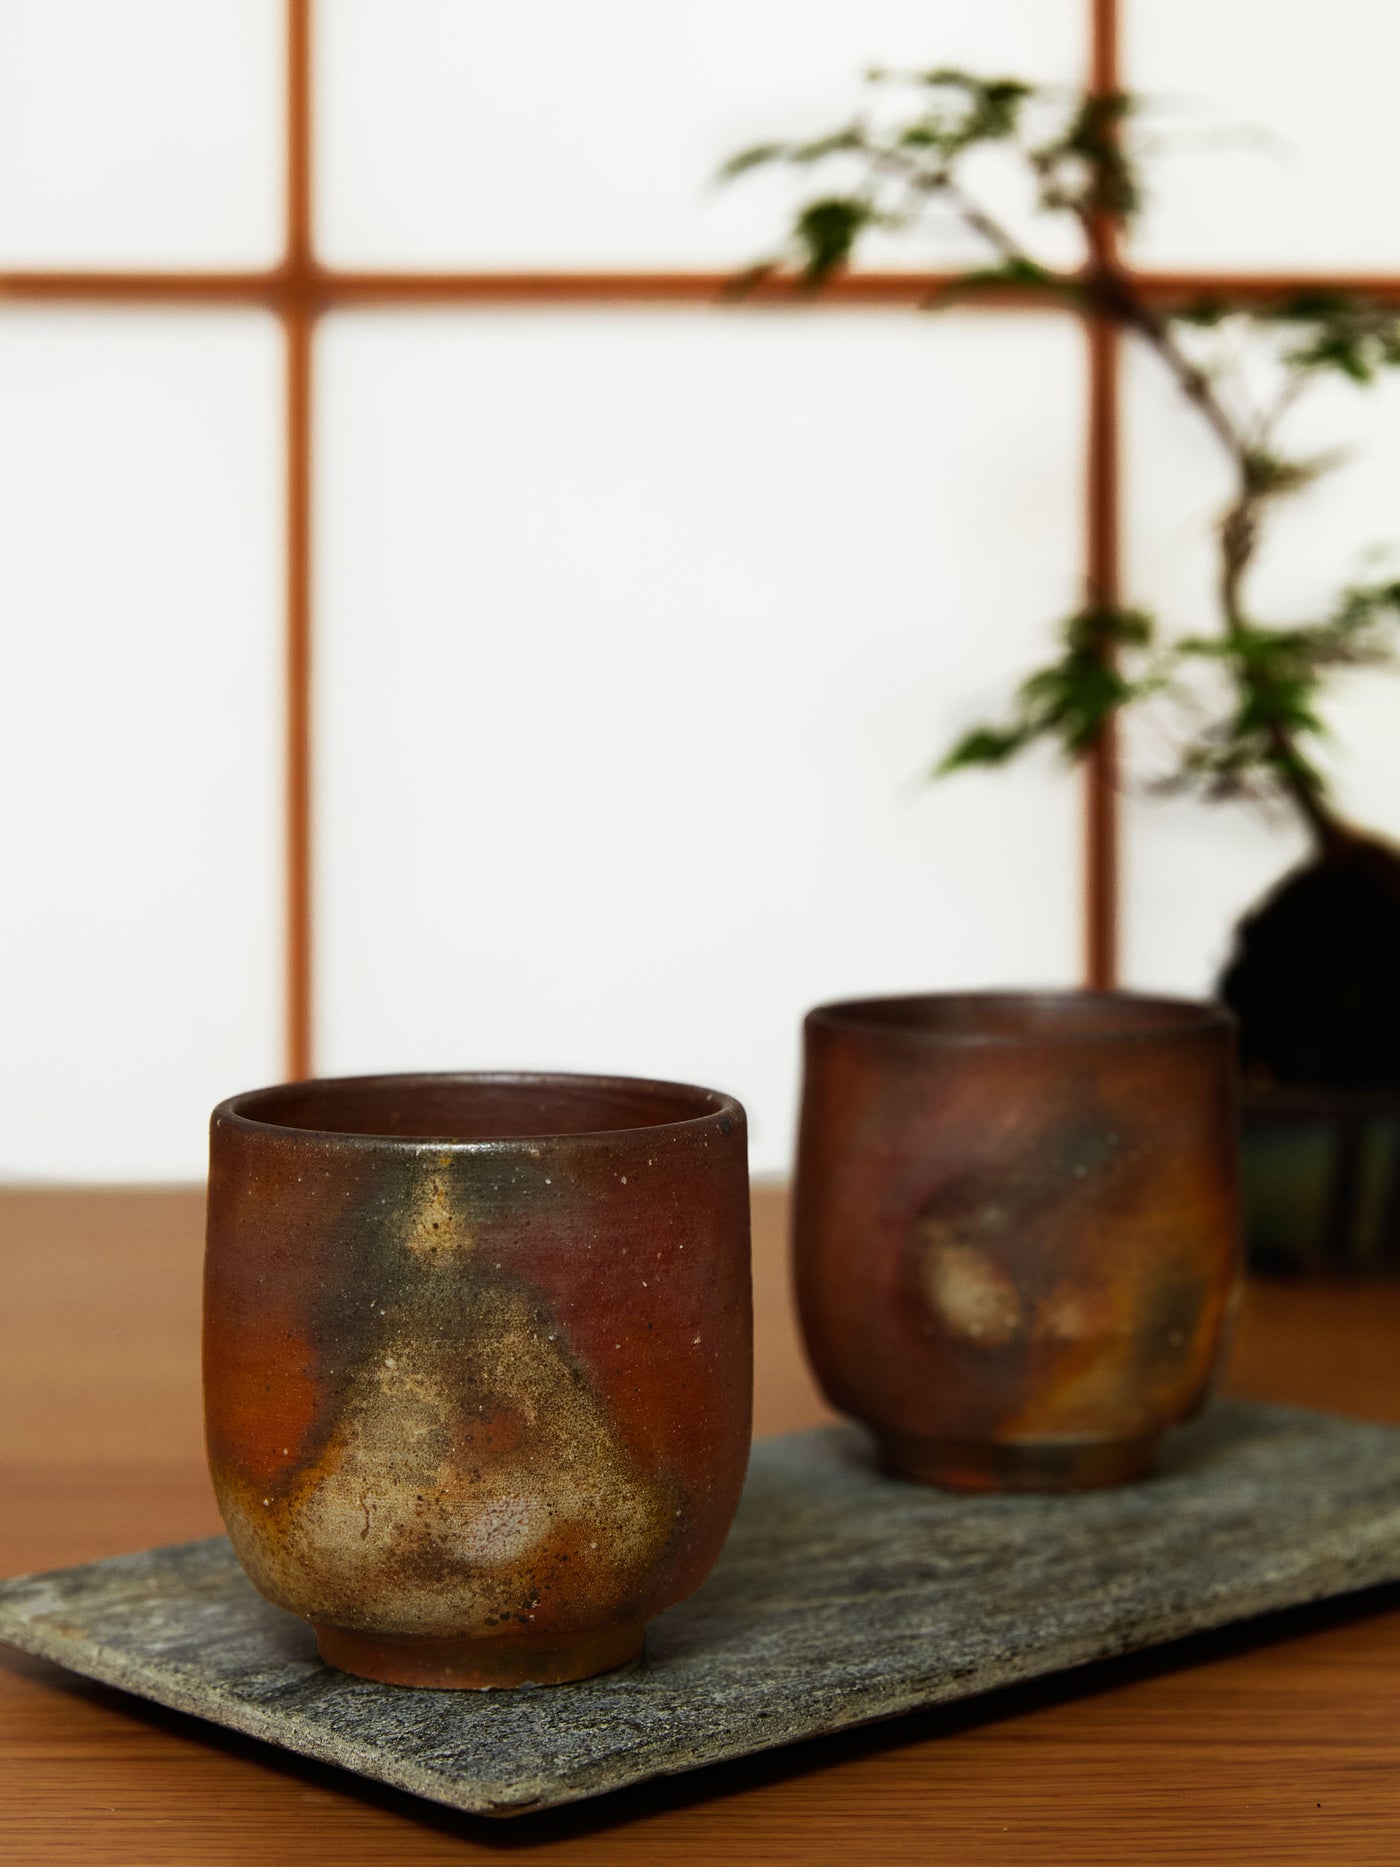 Sangiri Bizen Ware Yunomi Teacup Set by Hozan (7½ fl.oz/220ml)